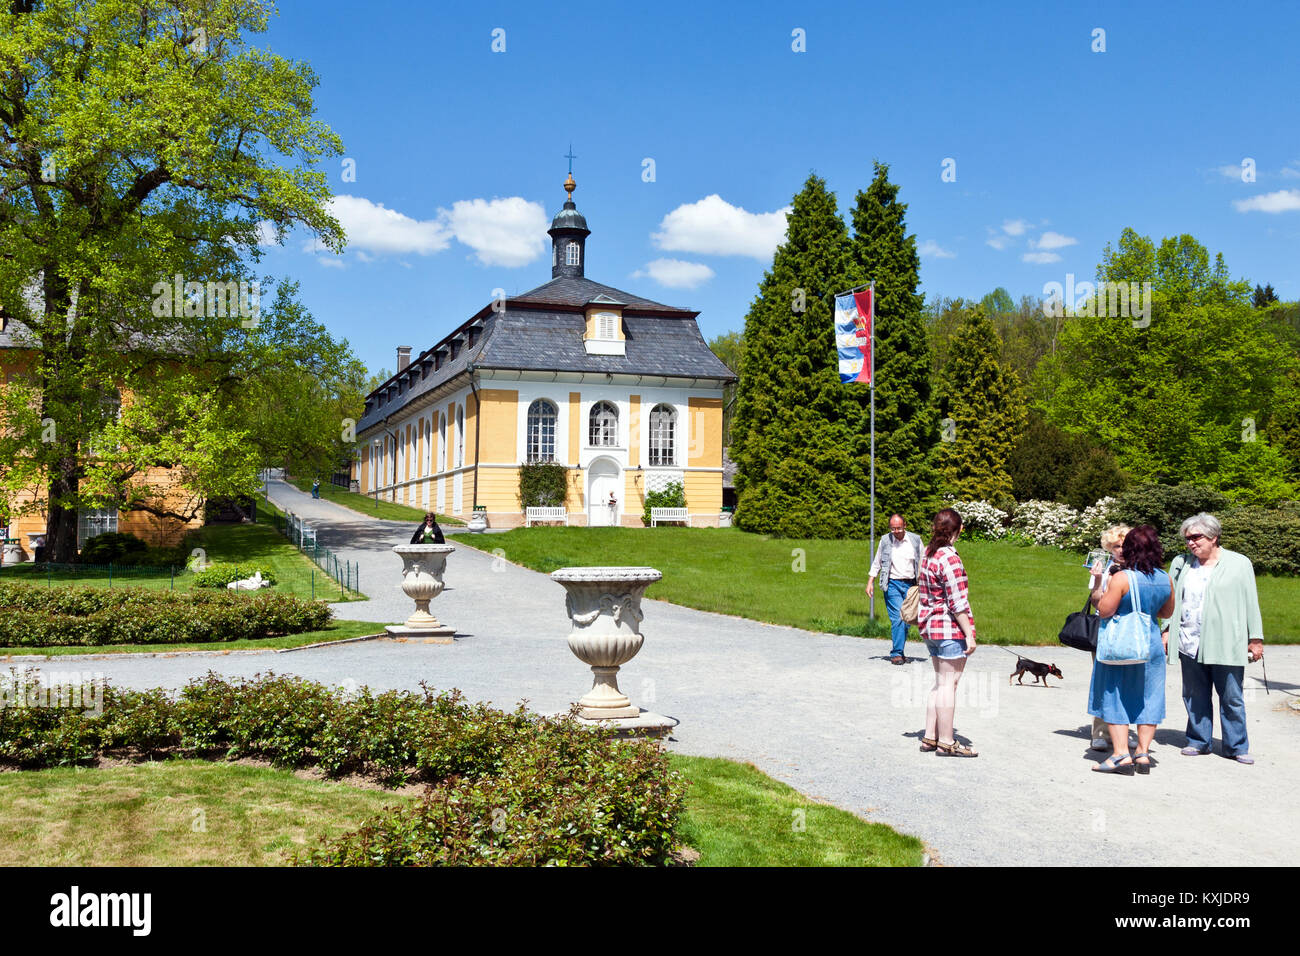 République tchèque, KOZEL - APR14 2016 : château de chasse dans le style classique Kozel construit au 18ème siècle, la région de Pilsen, République tchèque Bohême occidentale, republi Banque D'Images